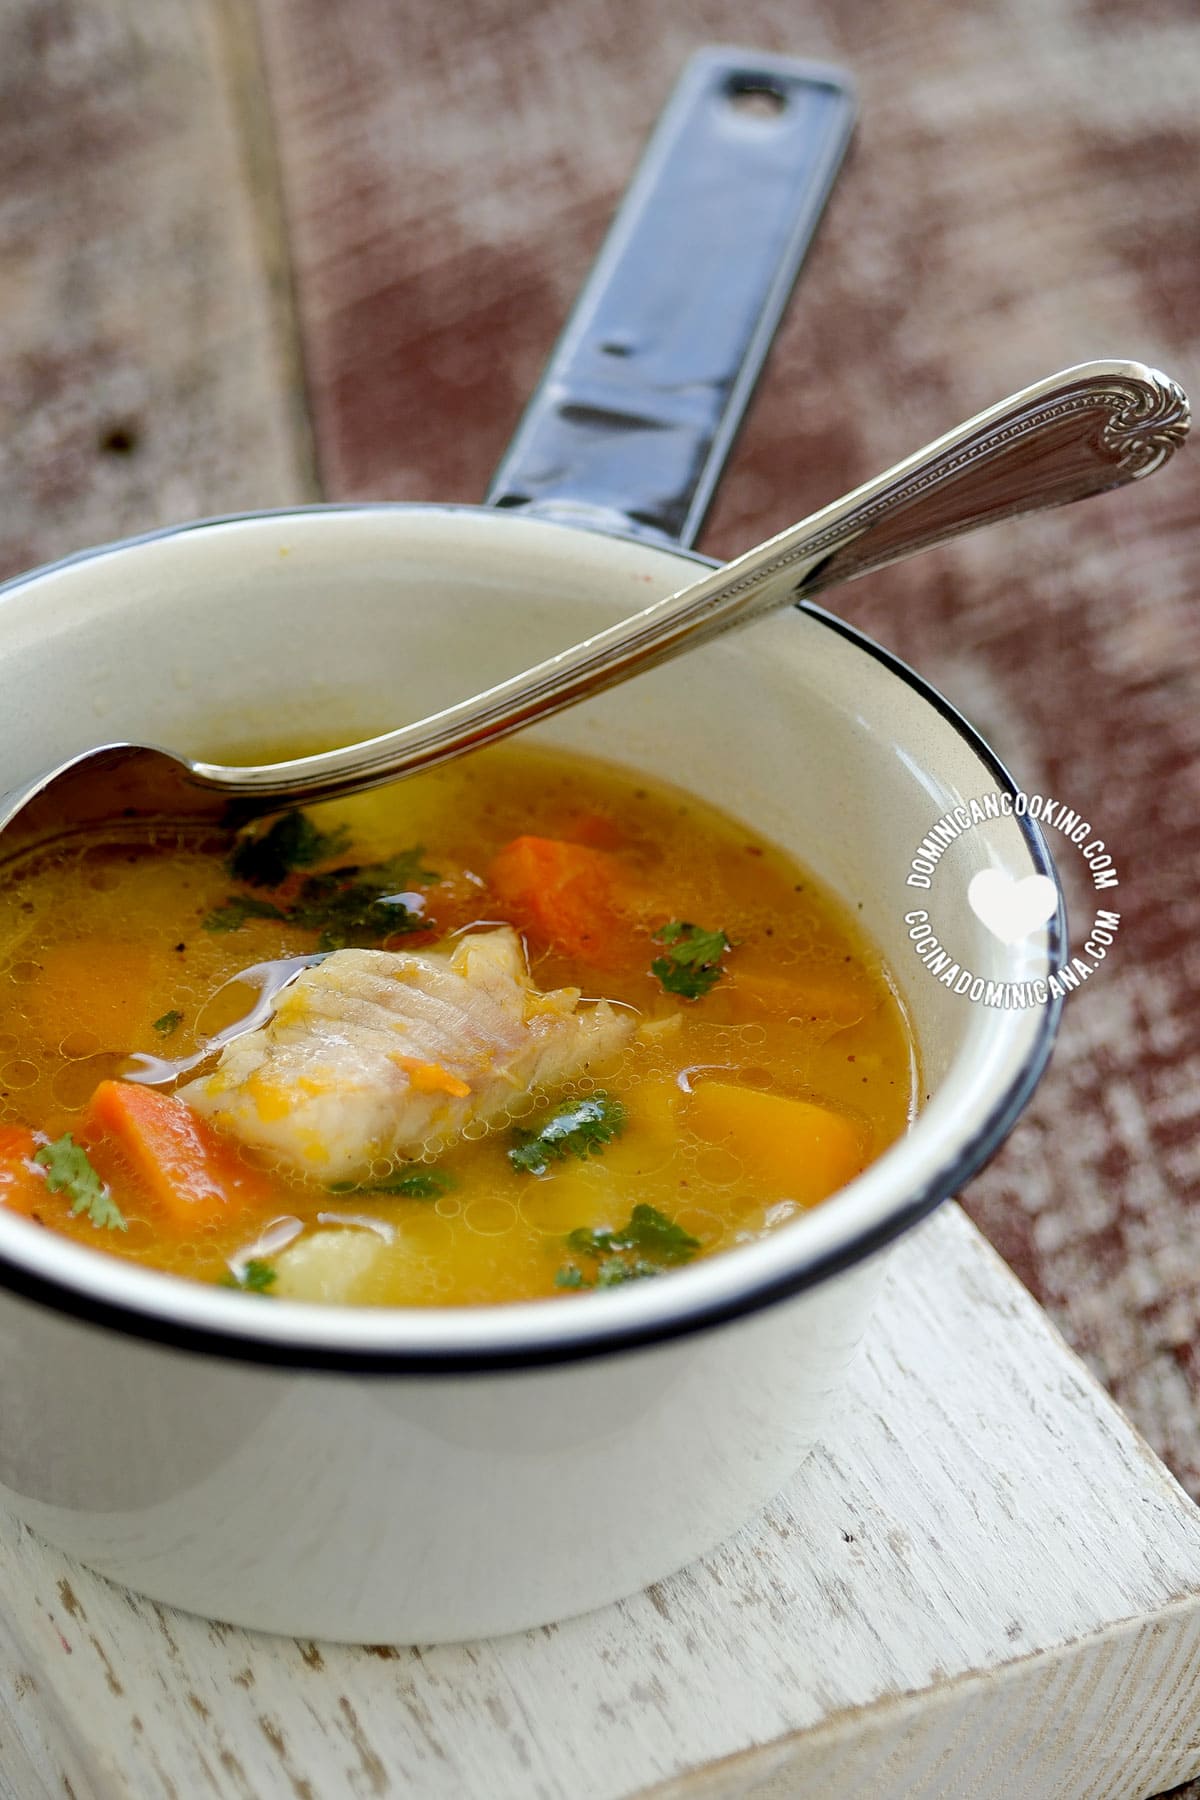 Sopa de pescado (fish soup).